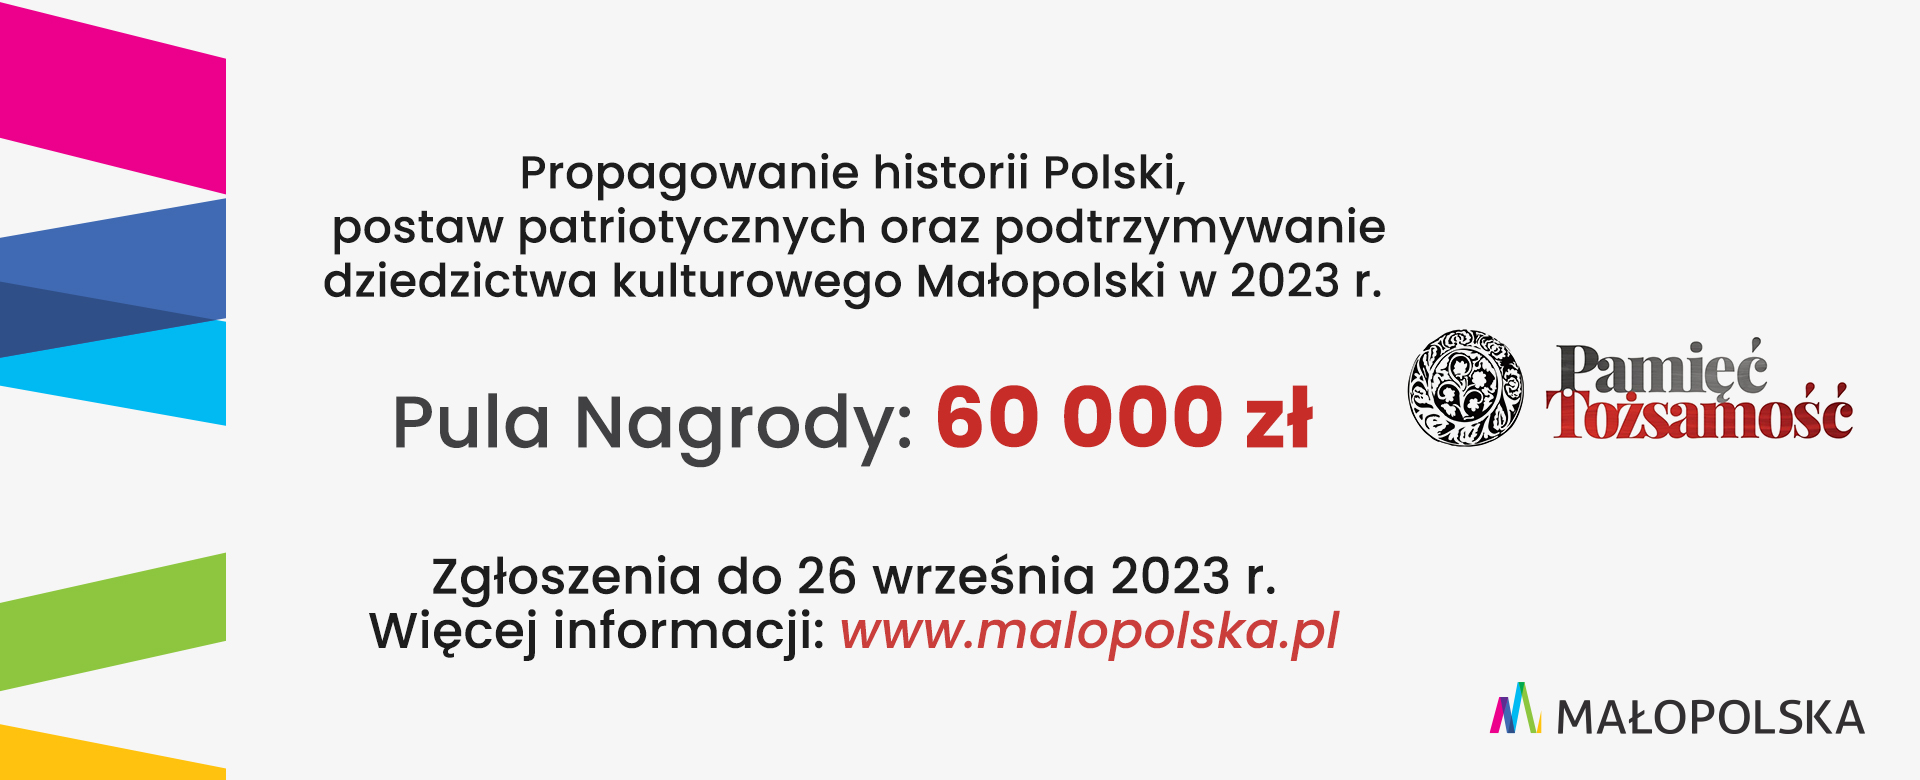 propagowanie historii Polski, postaw patriotycznych oraz podtrzymywanie dziedzictwa kulturowego Małopolski. Pula nagrody to 60 000 zł.